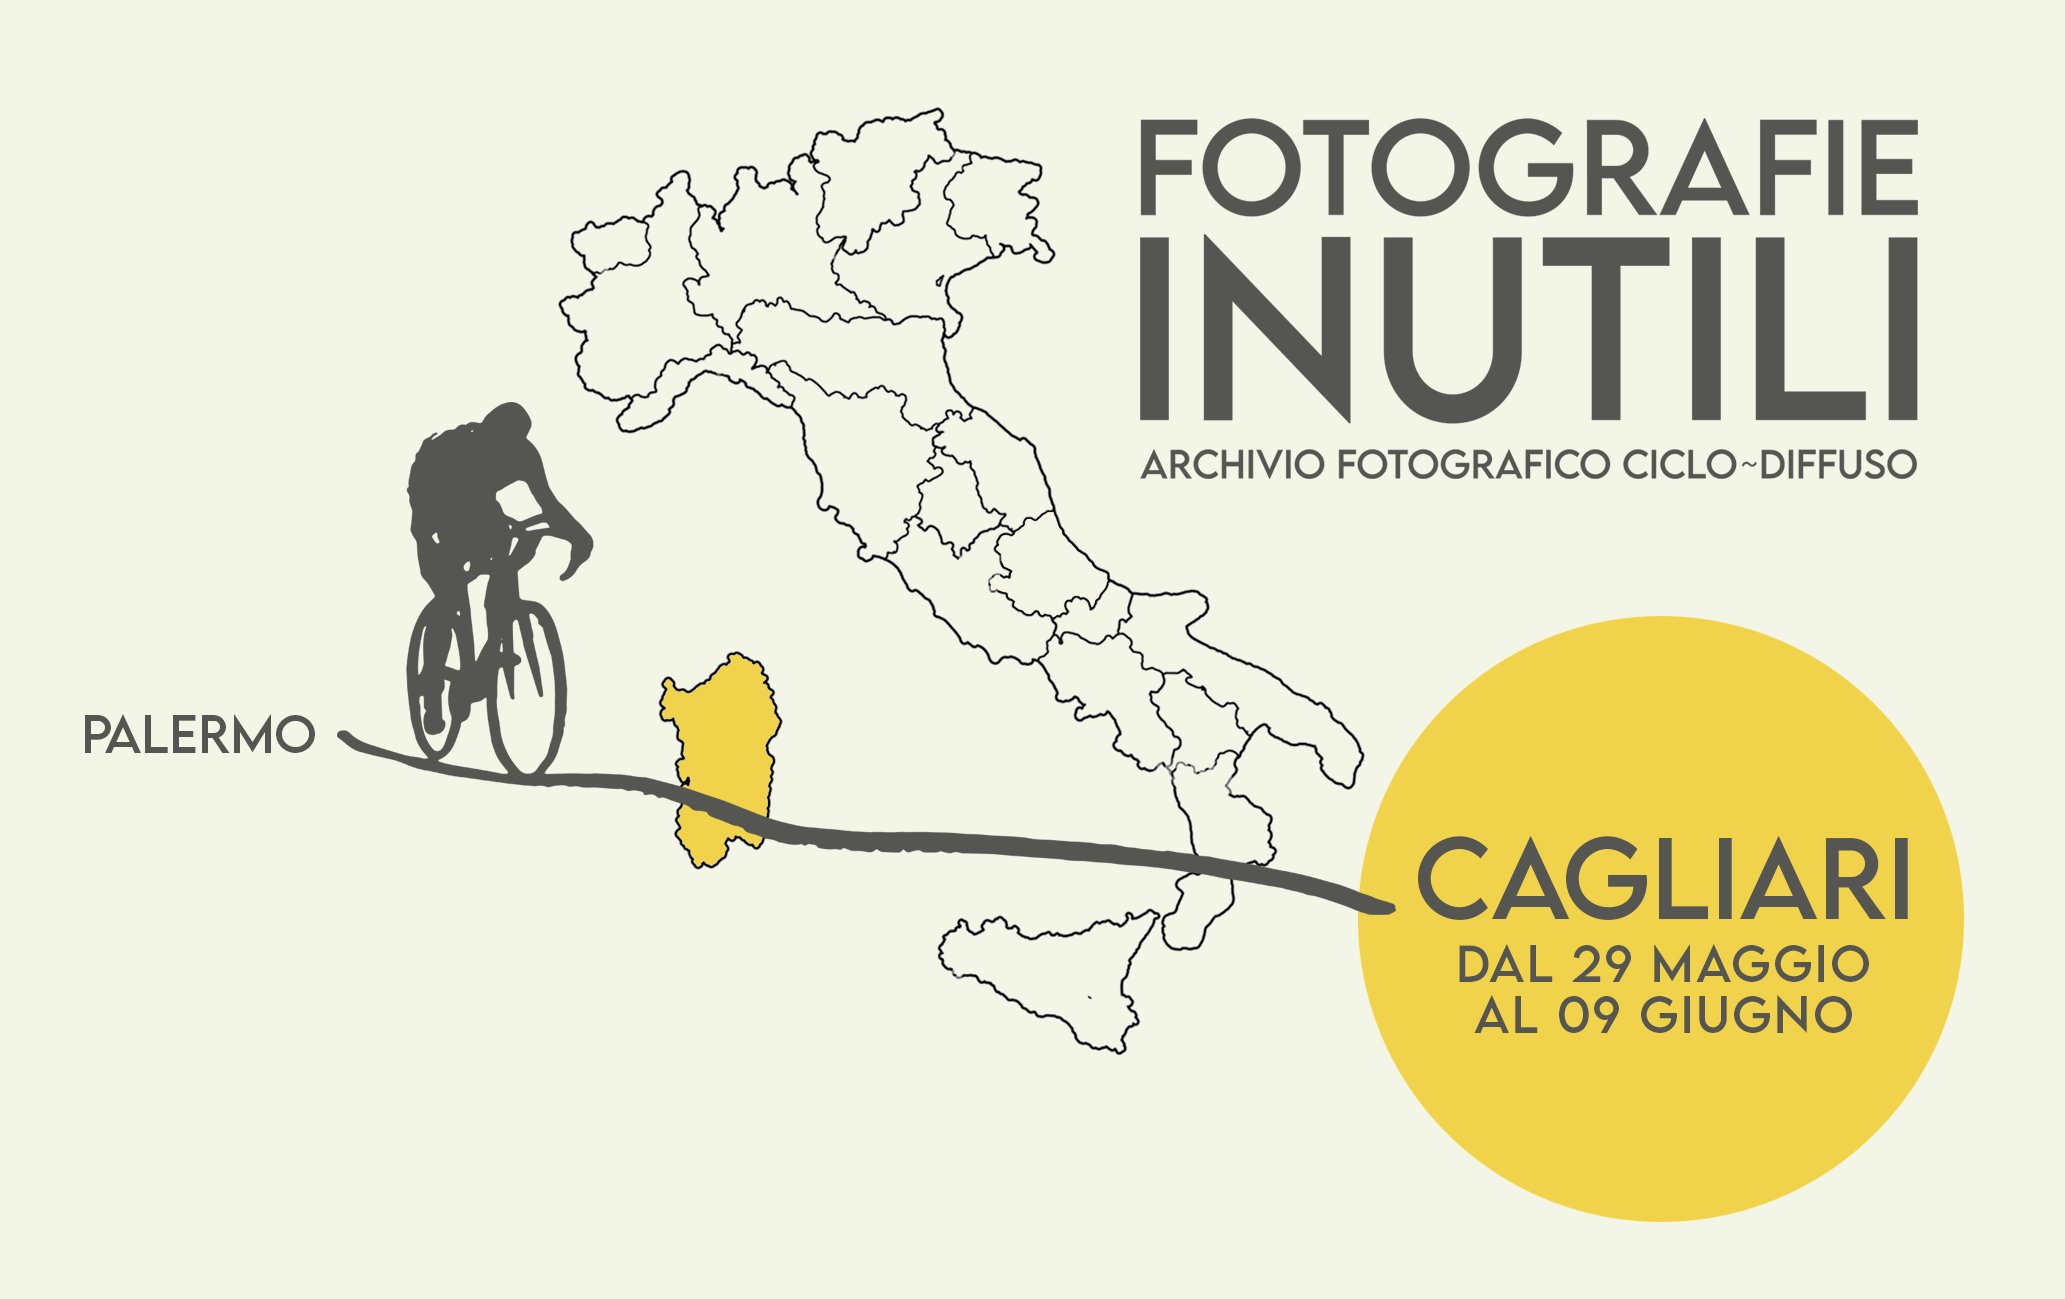 Al momento stai visualizzando Fotografie Inutili, Archivio fotografico ciclodiffuso – presentazione a Cagliari